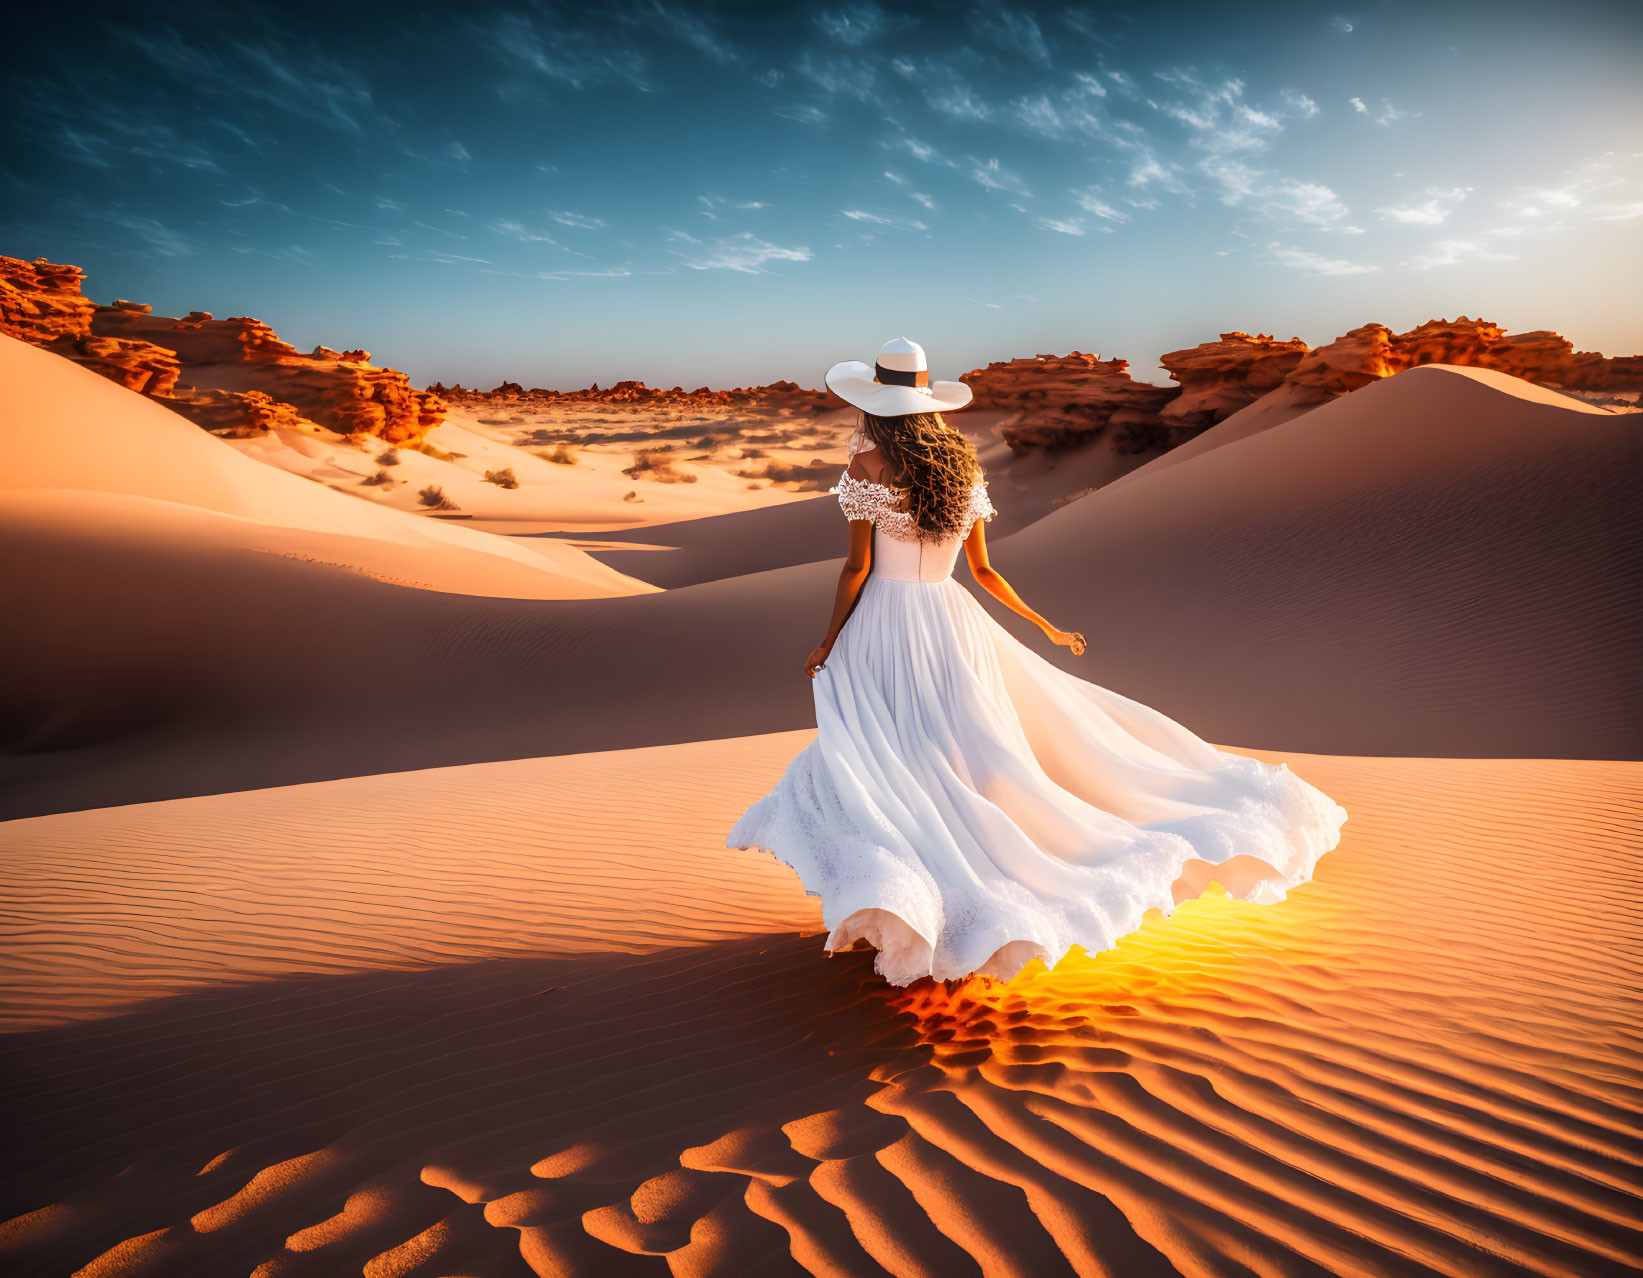 Girl in a desert